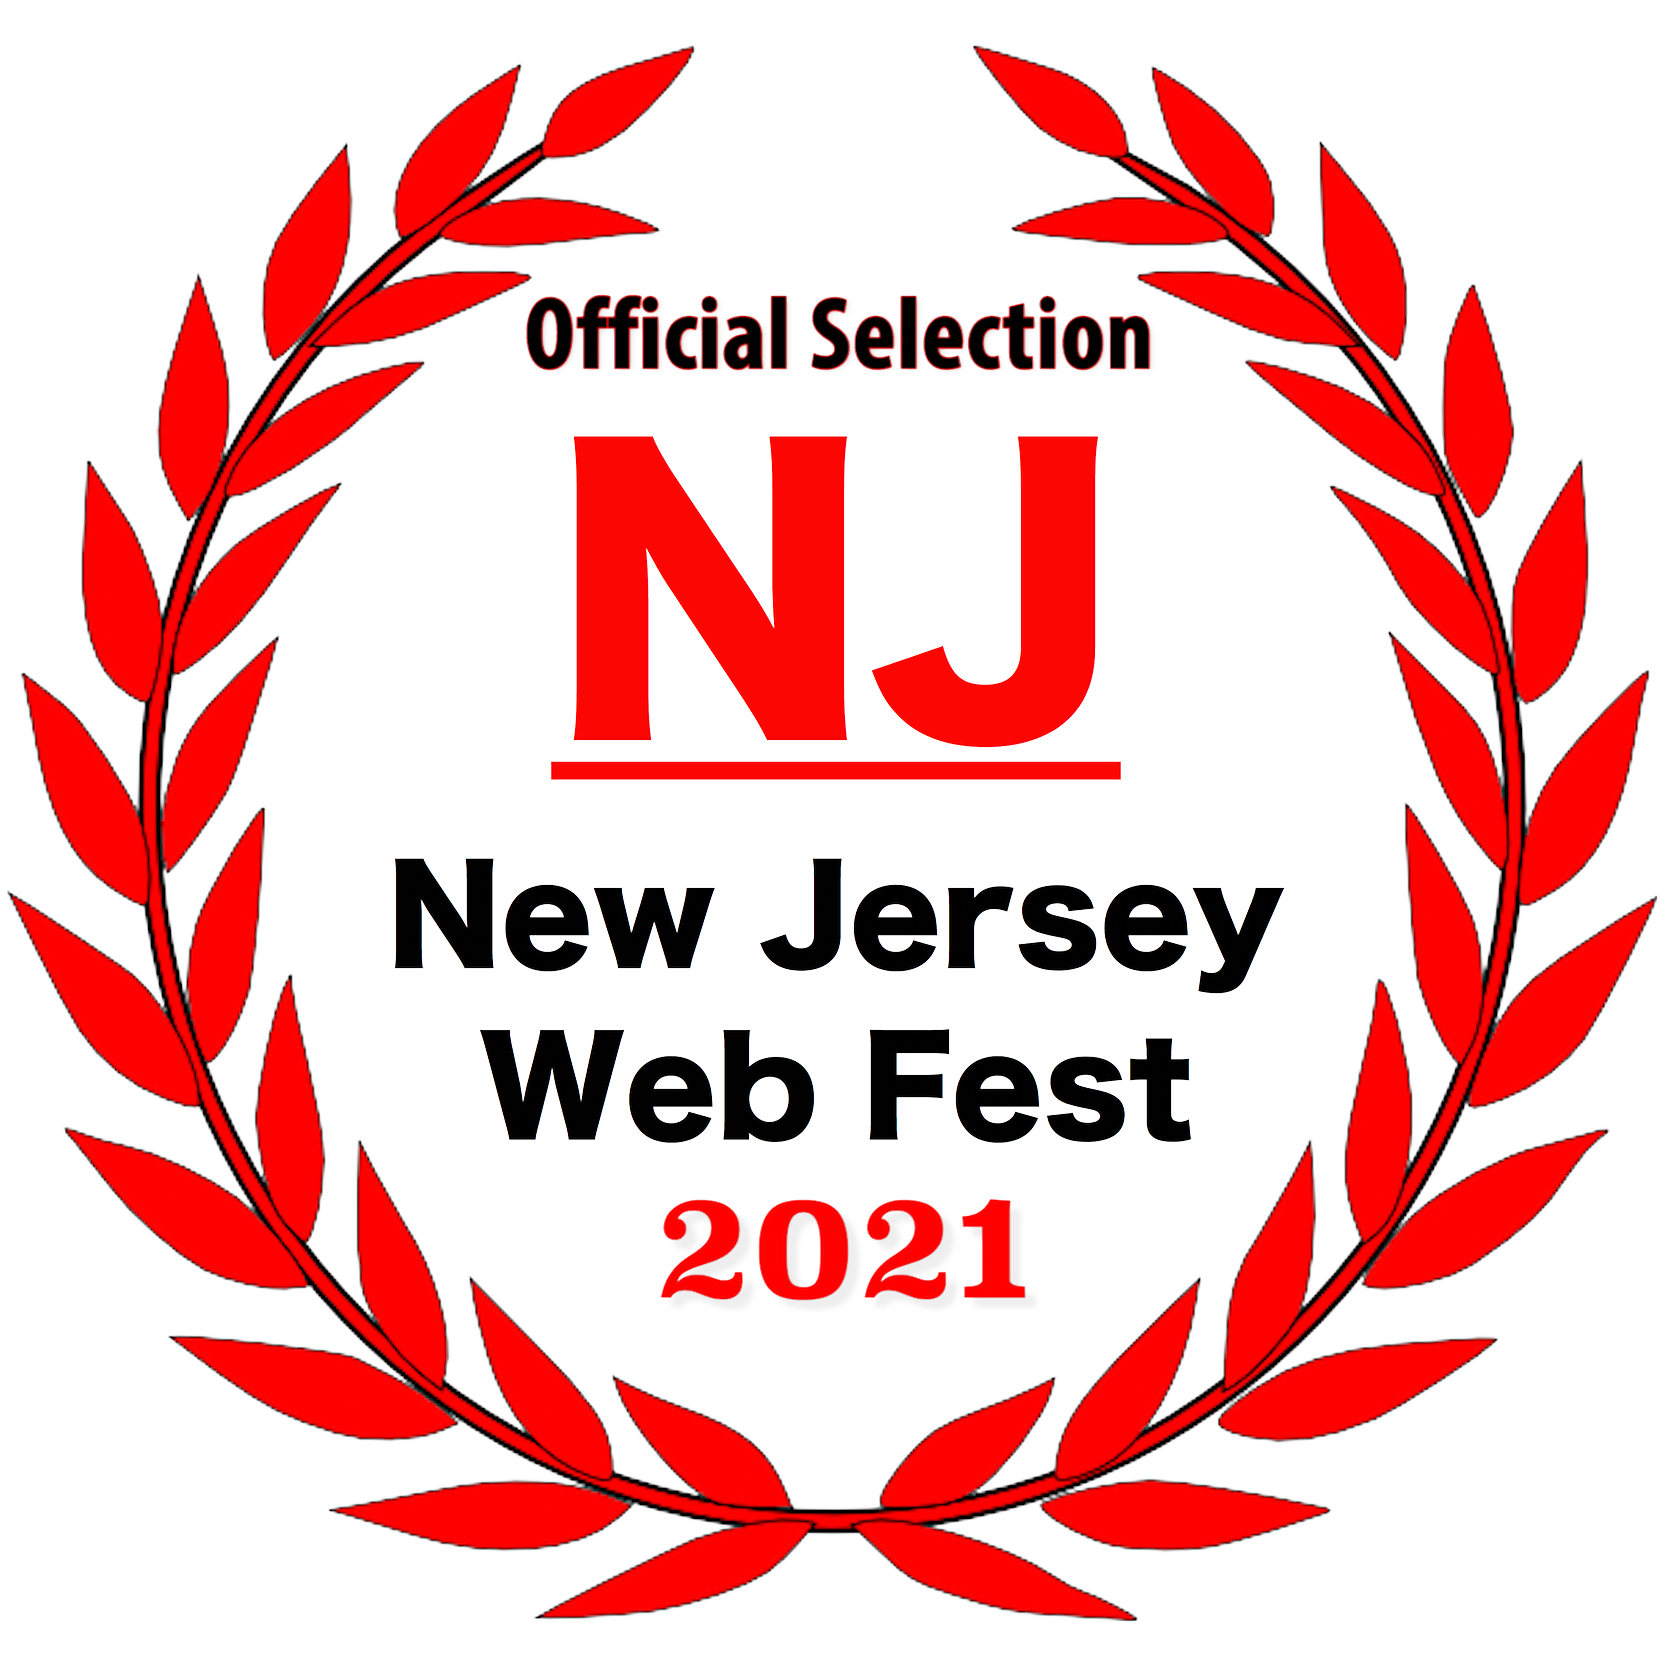 NJ WebFest 2021 Official Selection Laurel - No BG.png